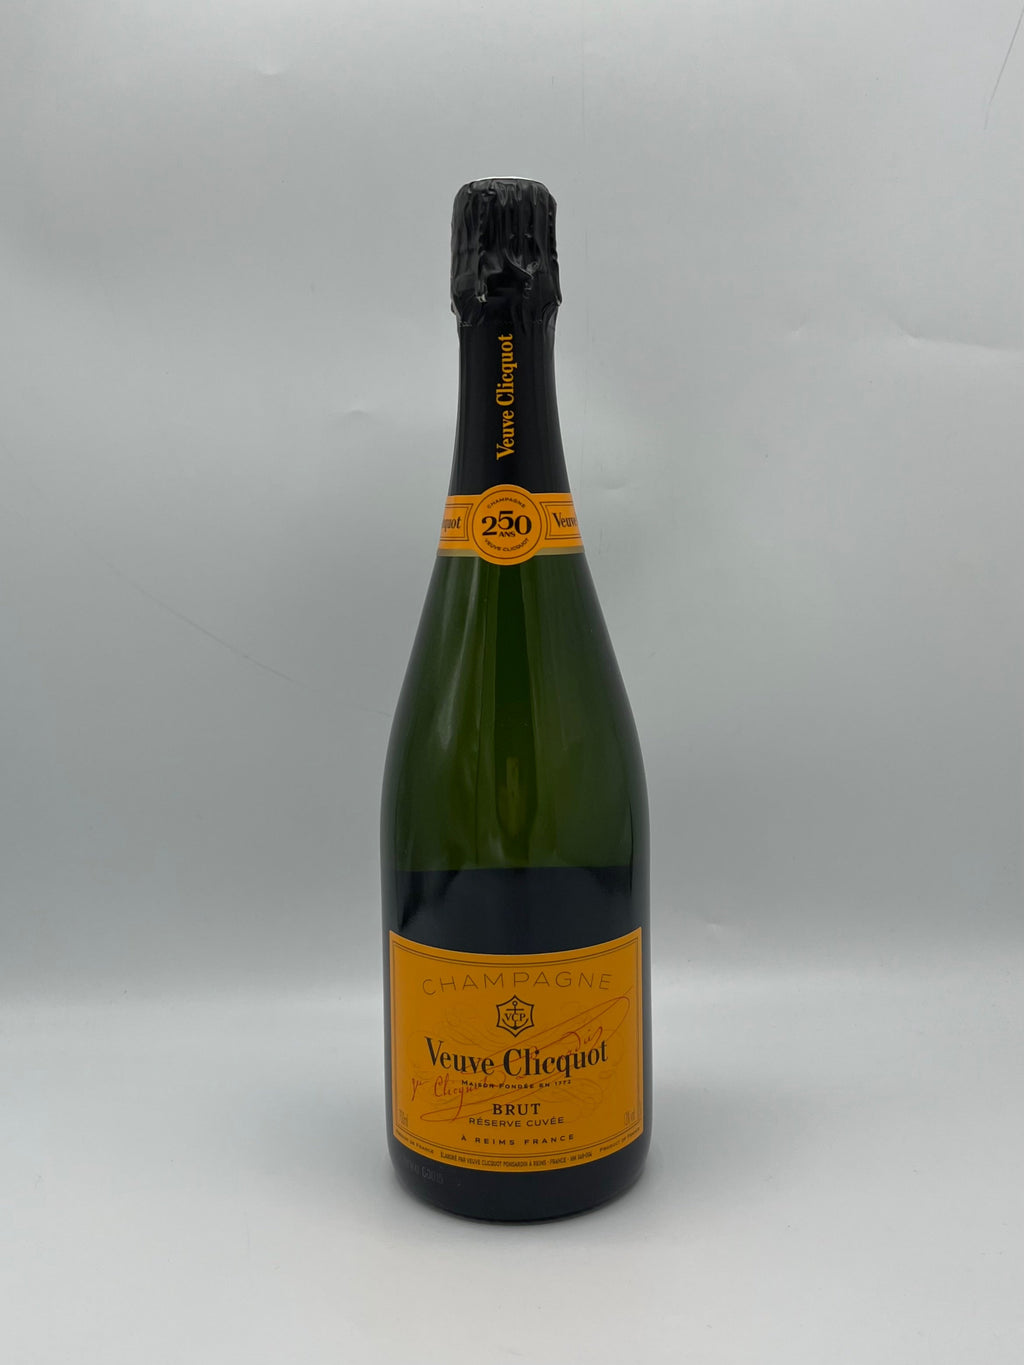 Champagne “Reserve Cuvée” - Veuve Clicquot 